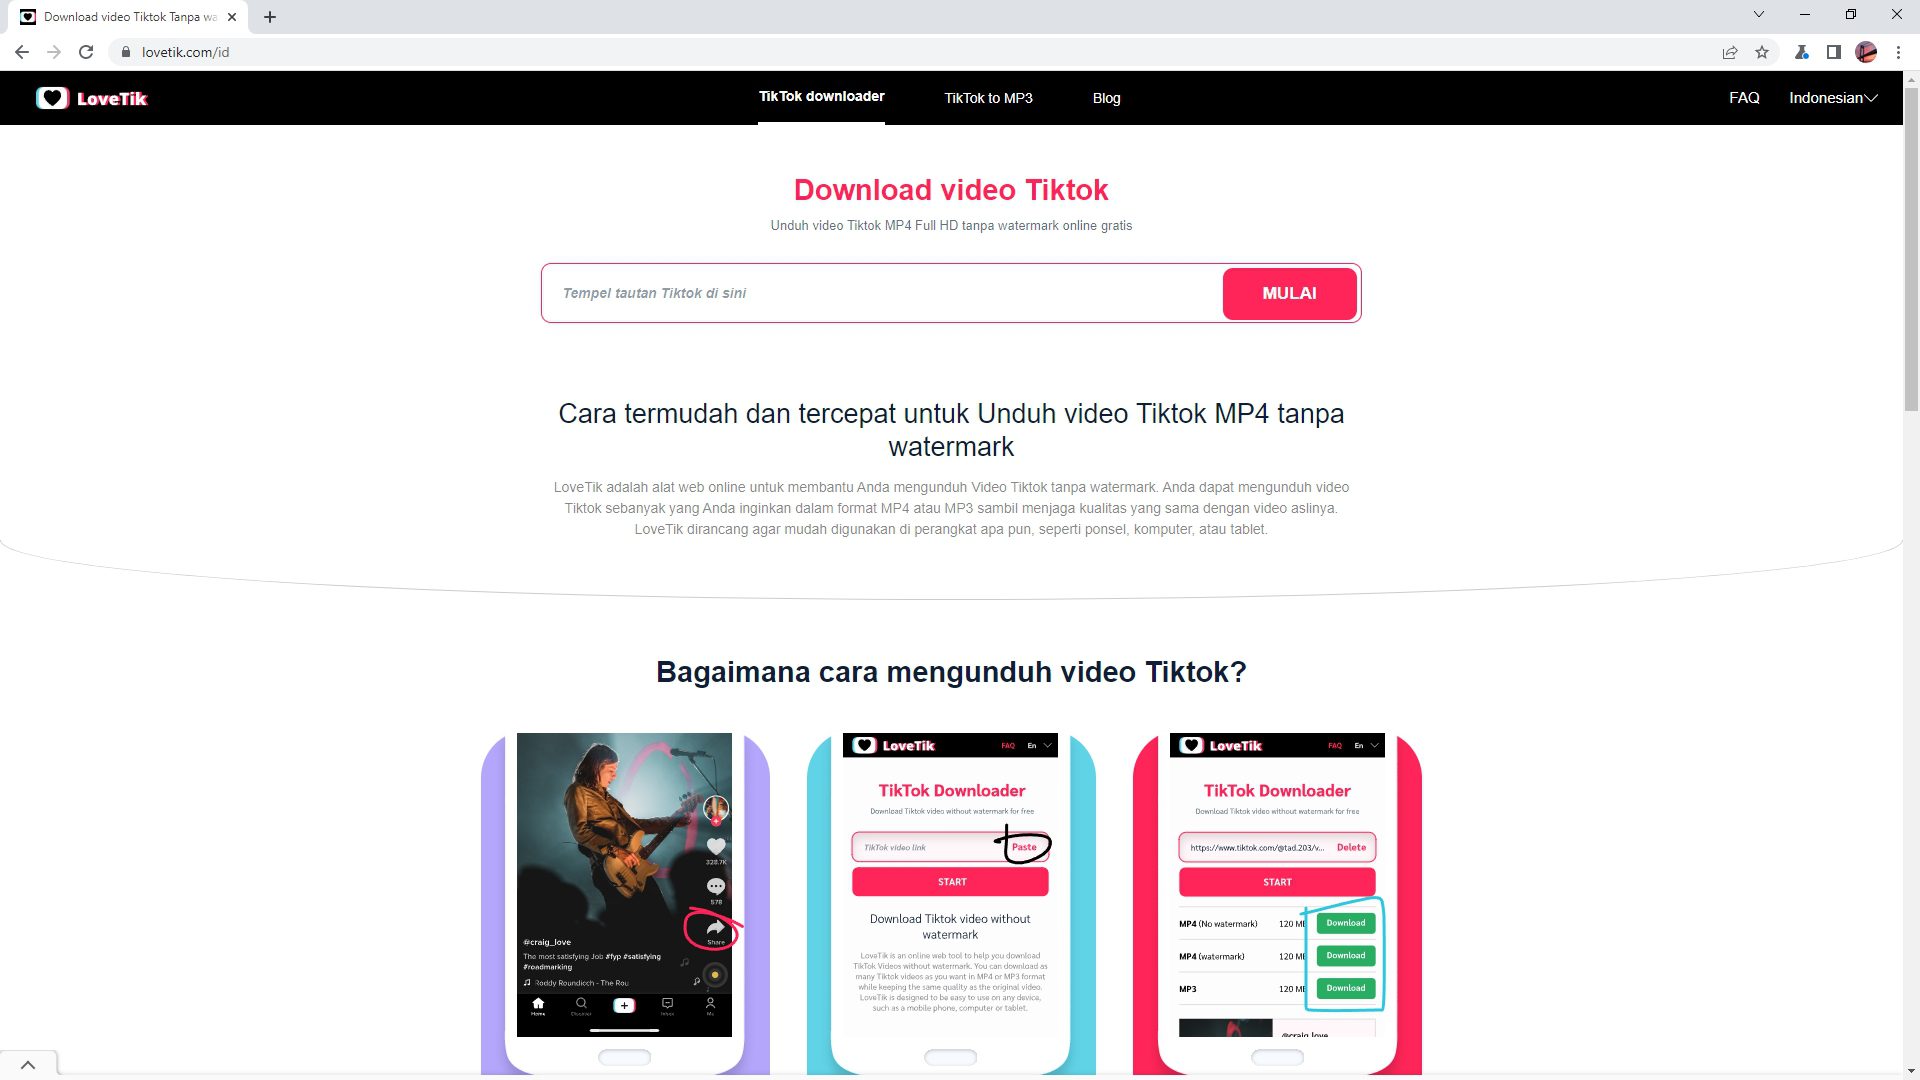 Tiktok Downloader oleh LoveTik 4 Situs Gratis Untuk Download Video TikTok di PC/Laptop 4 Tiktok Downloader oleh LoveTik